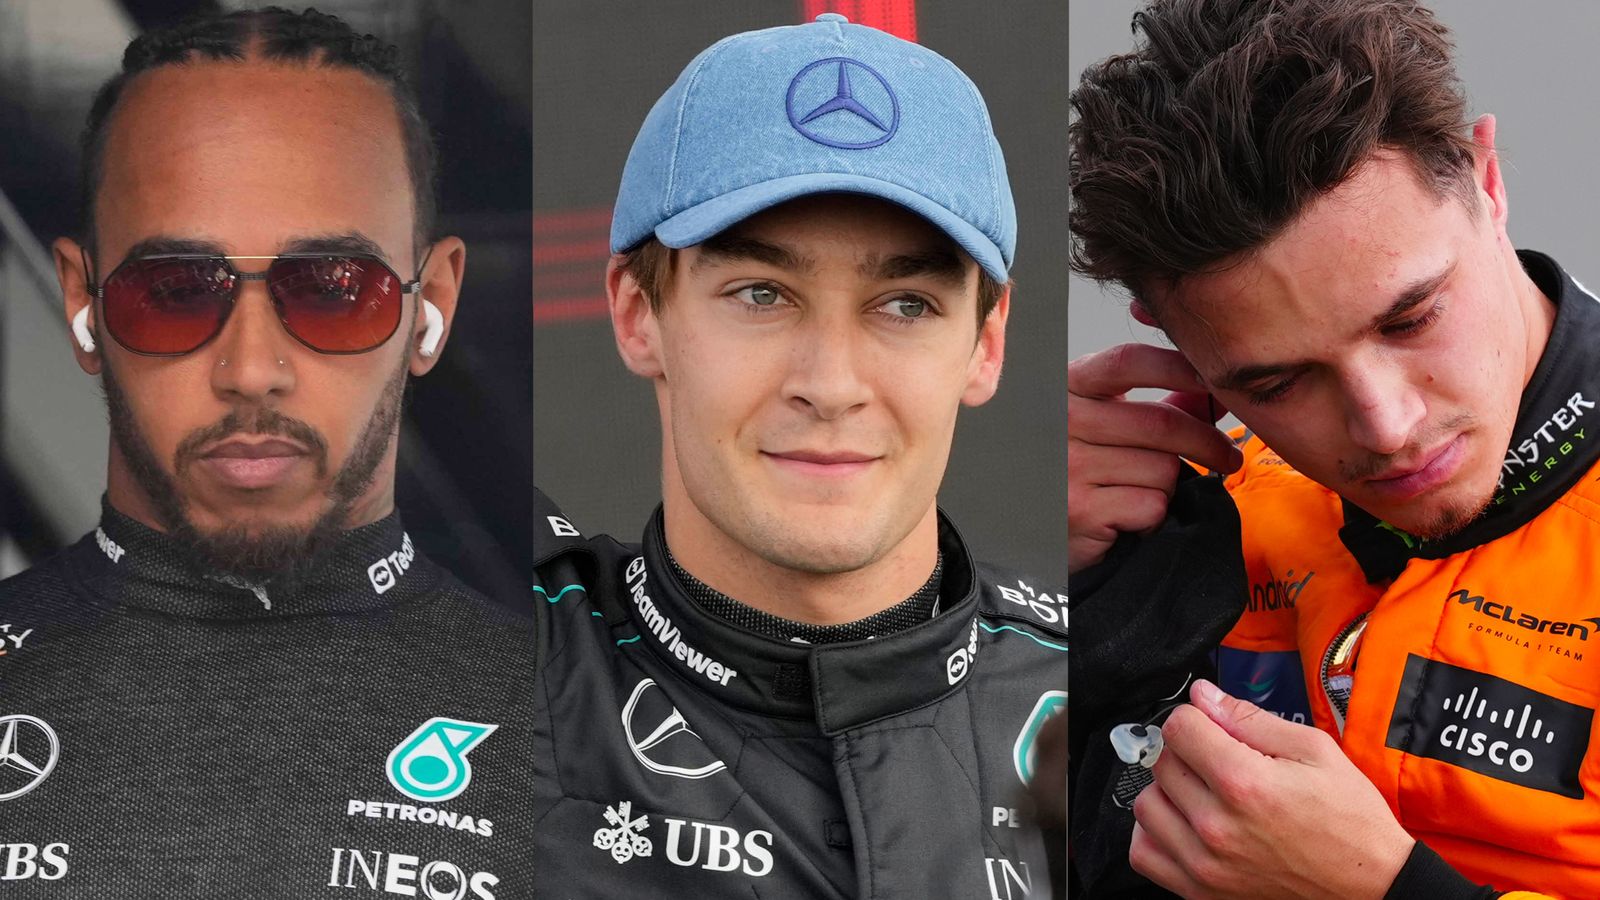 Previa del GP de Gran Bretaña: George Russell, Lewis Hamilton y Lando Norris luchan por la victoria en casa con Max Verstappen al acecho | Noticias de F1